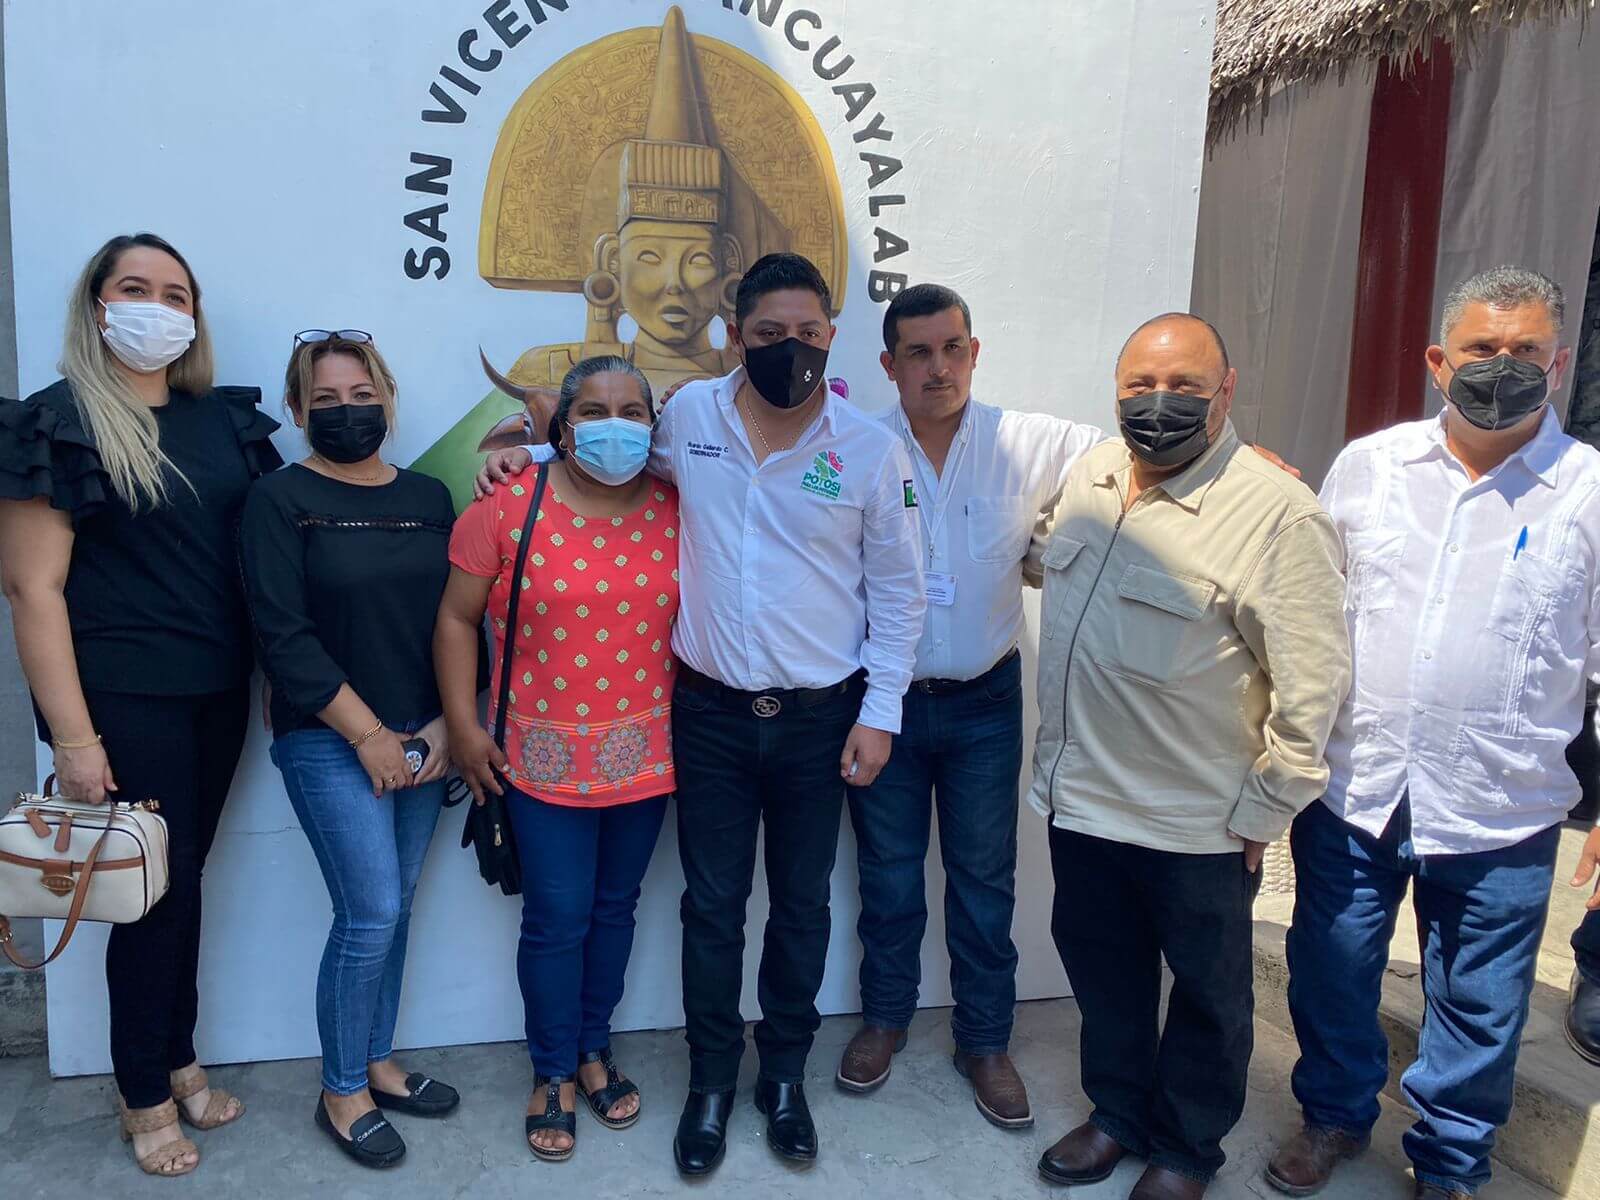 El Gobernador lamentó el deceso del activista Pedro Carrizales “El Mijis”, y señaló que se le ha brindado el apoyo necesario a su familia.